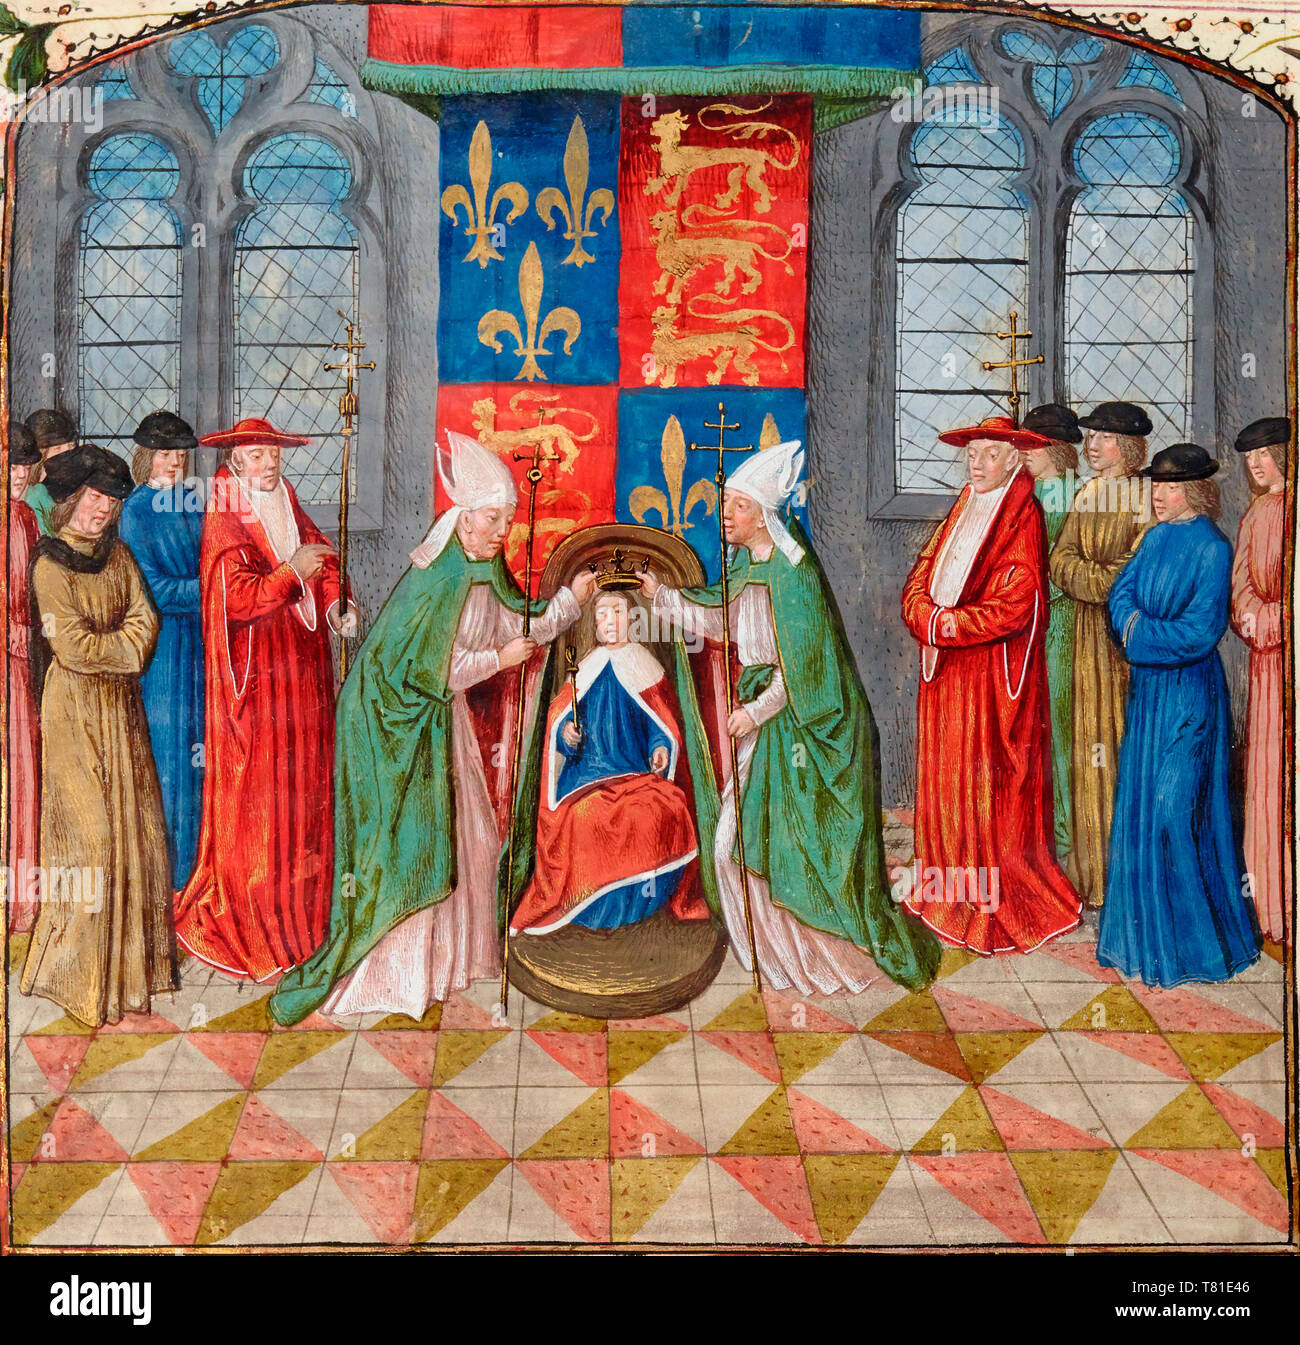 Le Roi Henri VI d'Angleterre est couronné Roi de France au 15e siècle Banque D'Images